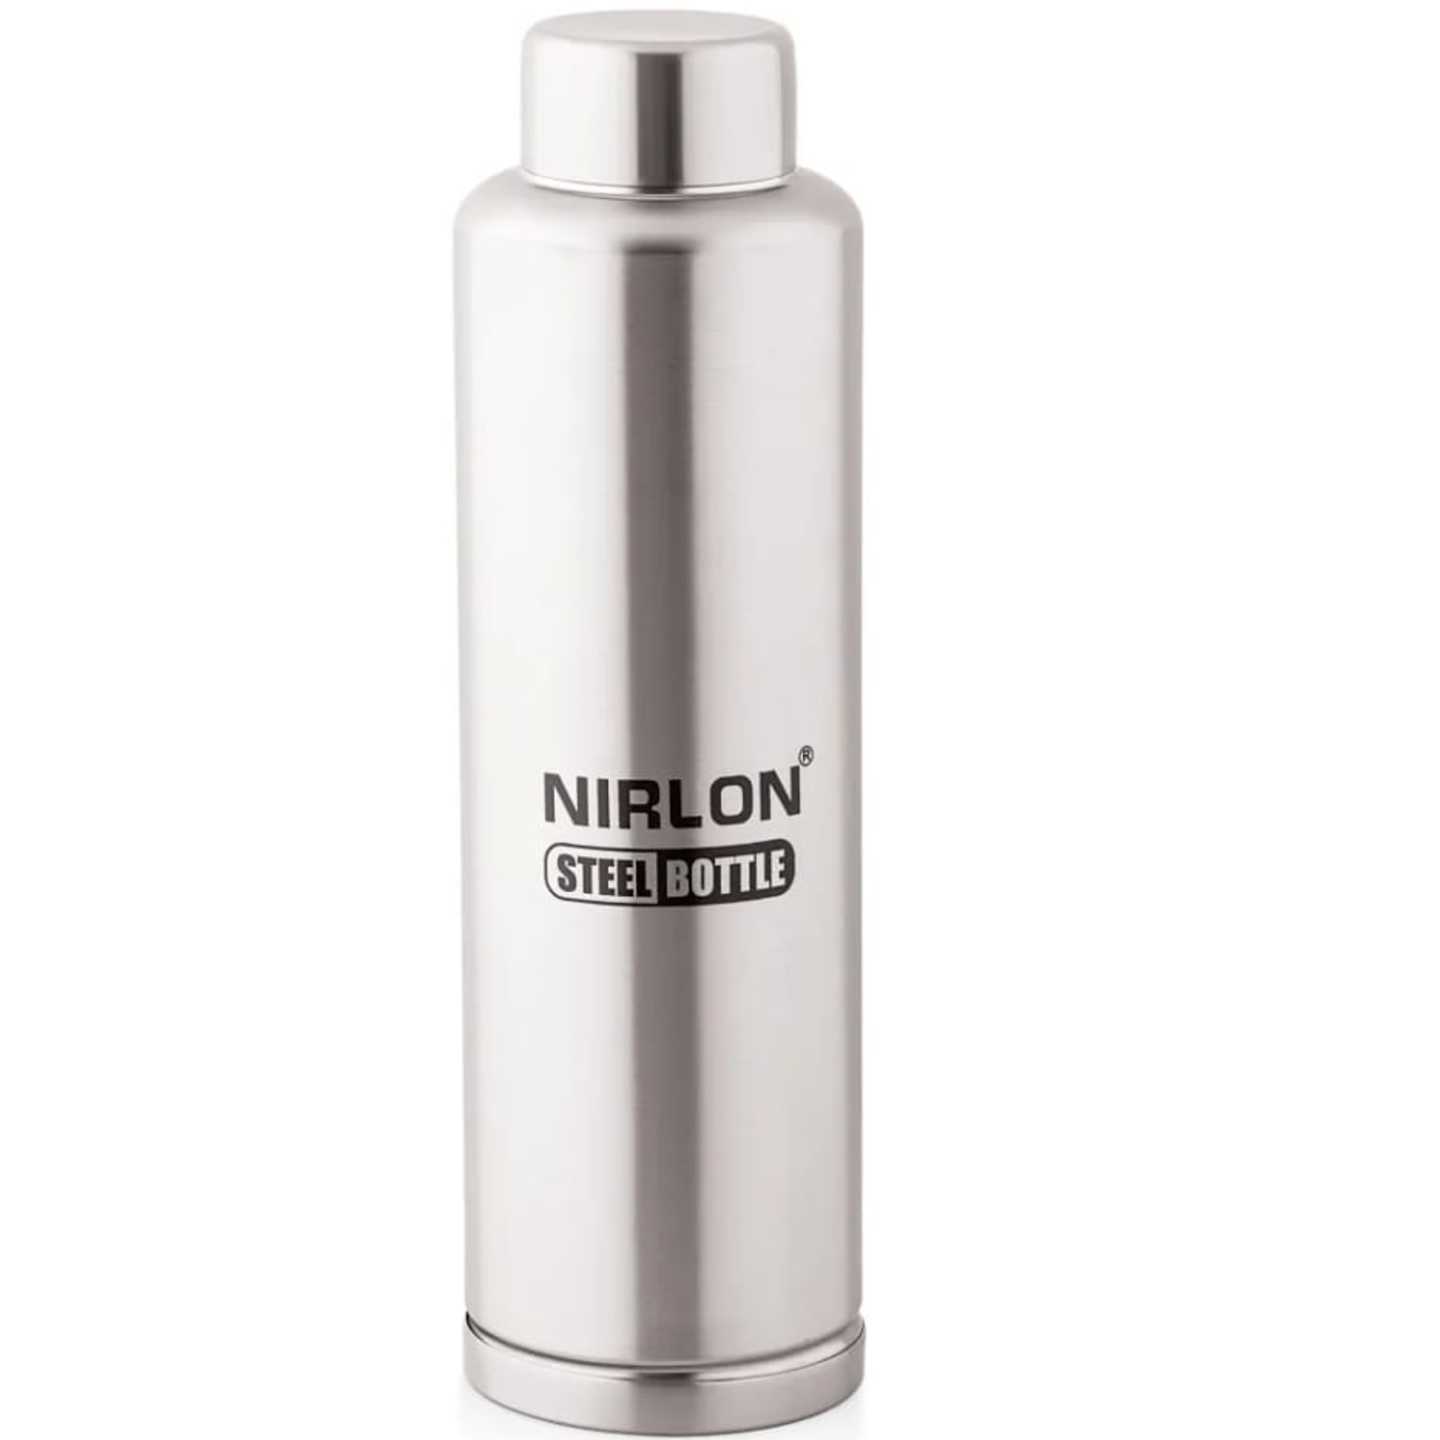 Nirlon stain steel bottle 1000ml